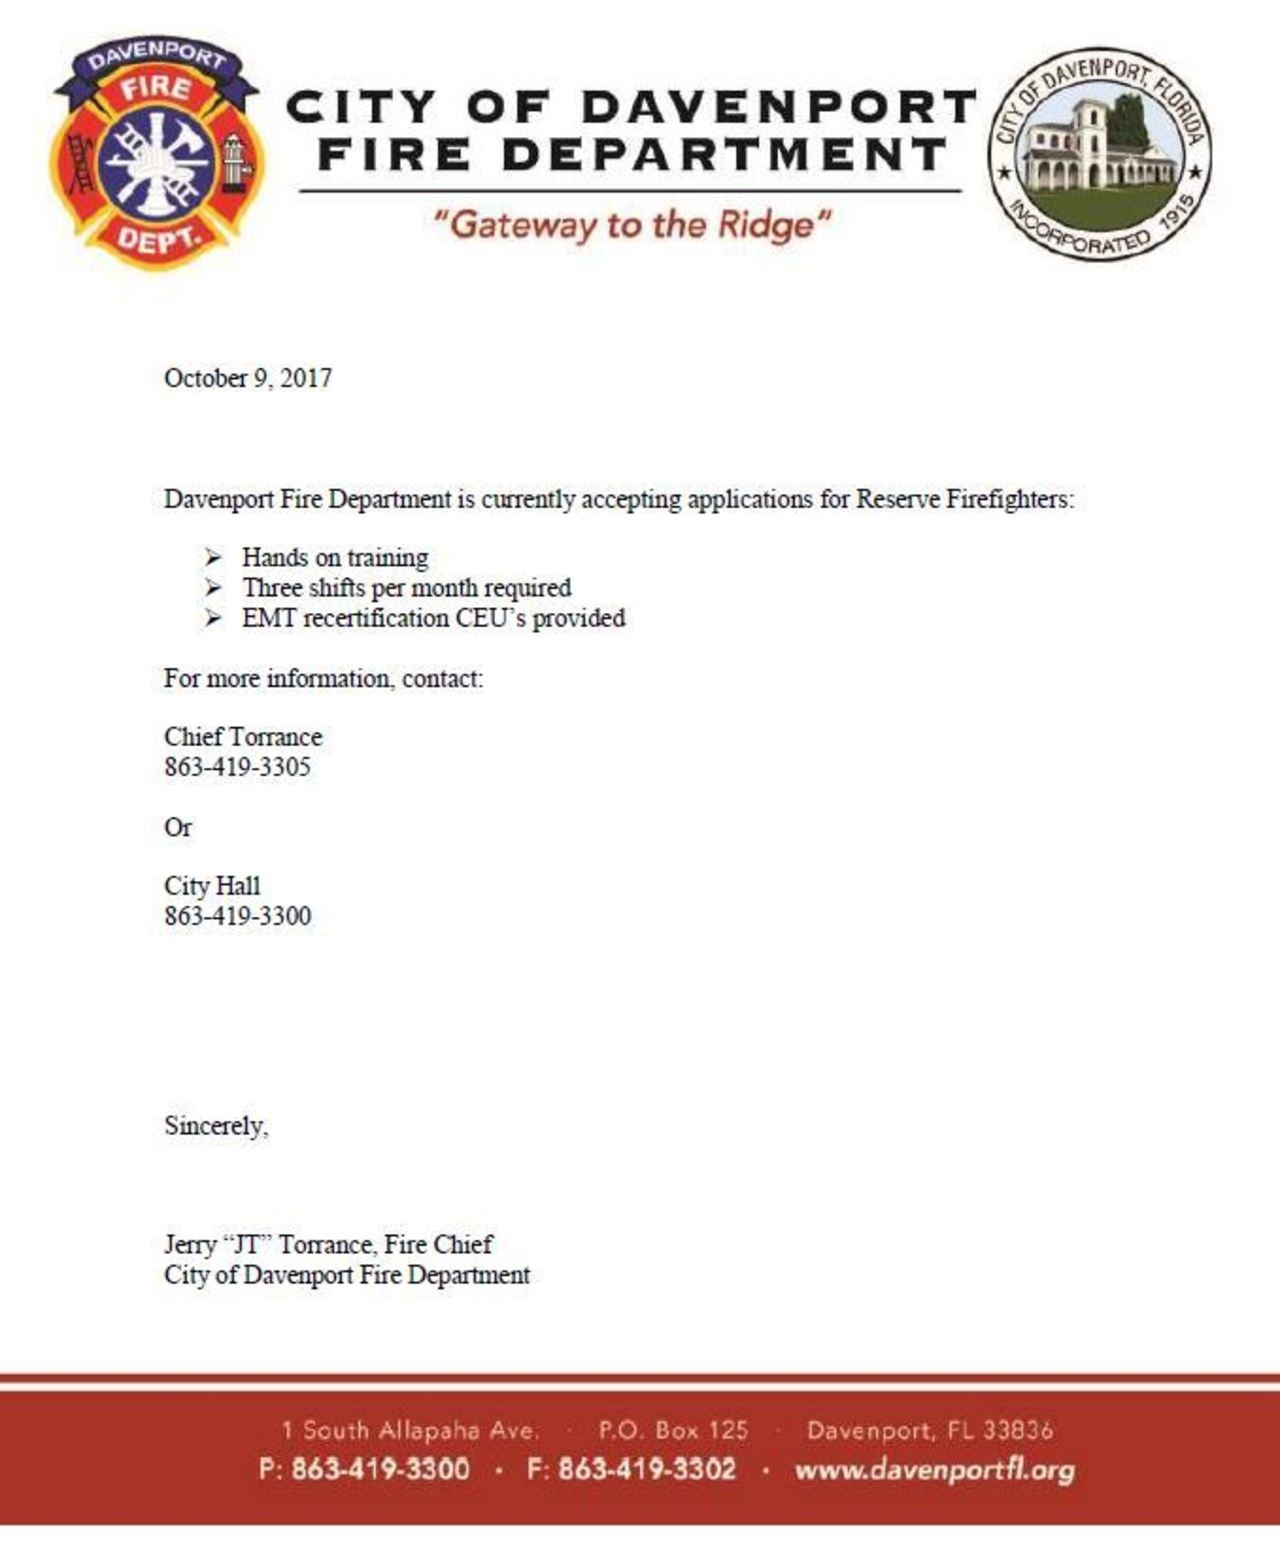 Davenport FD Hiring Reserve Firefighters